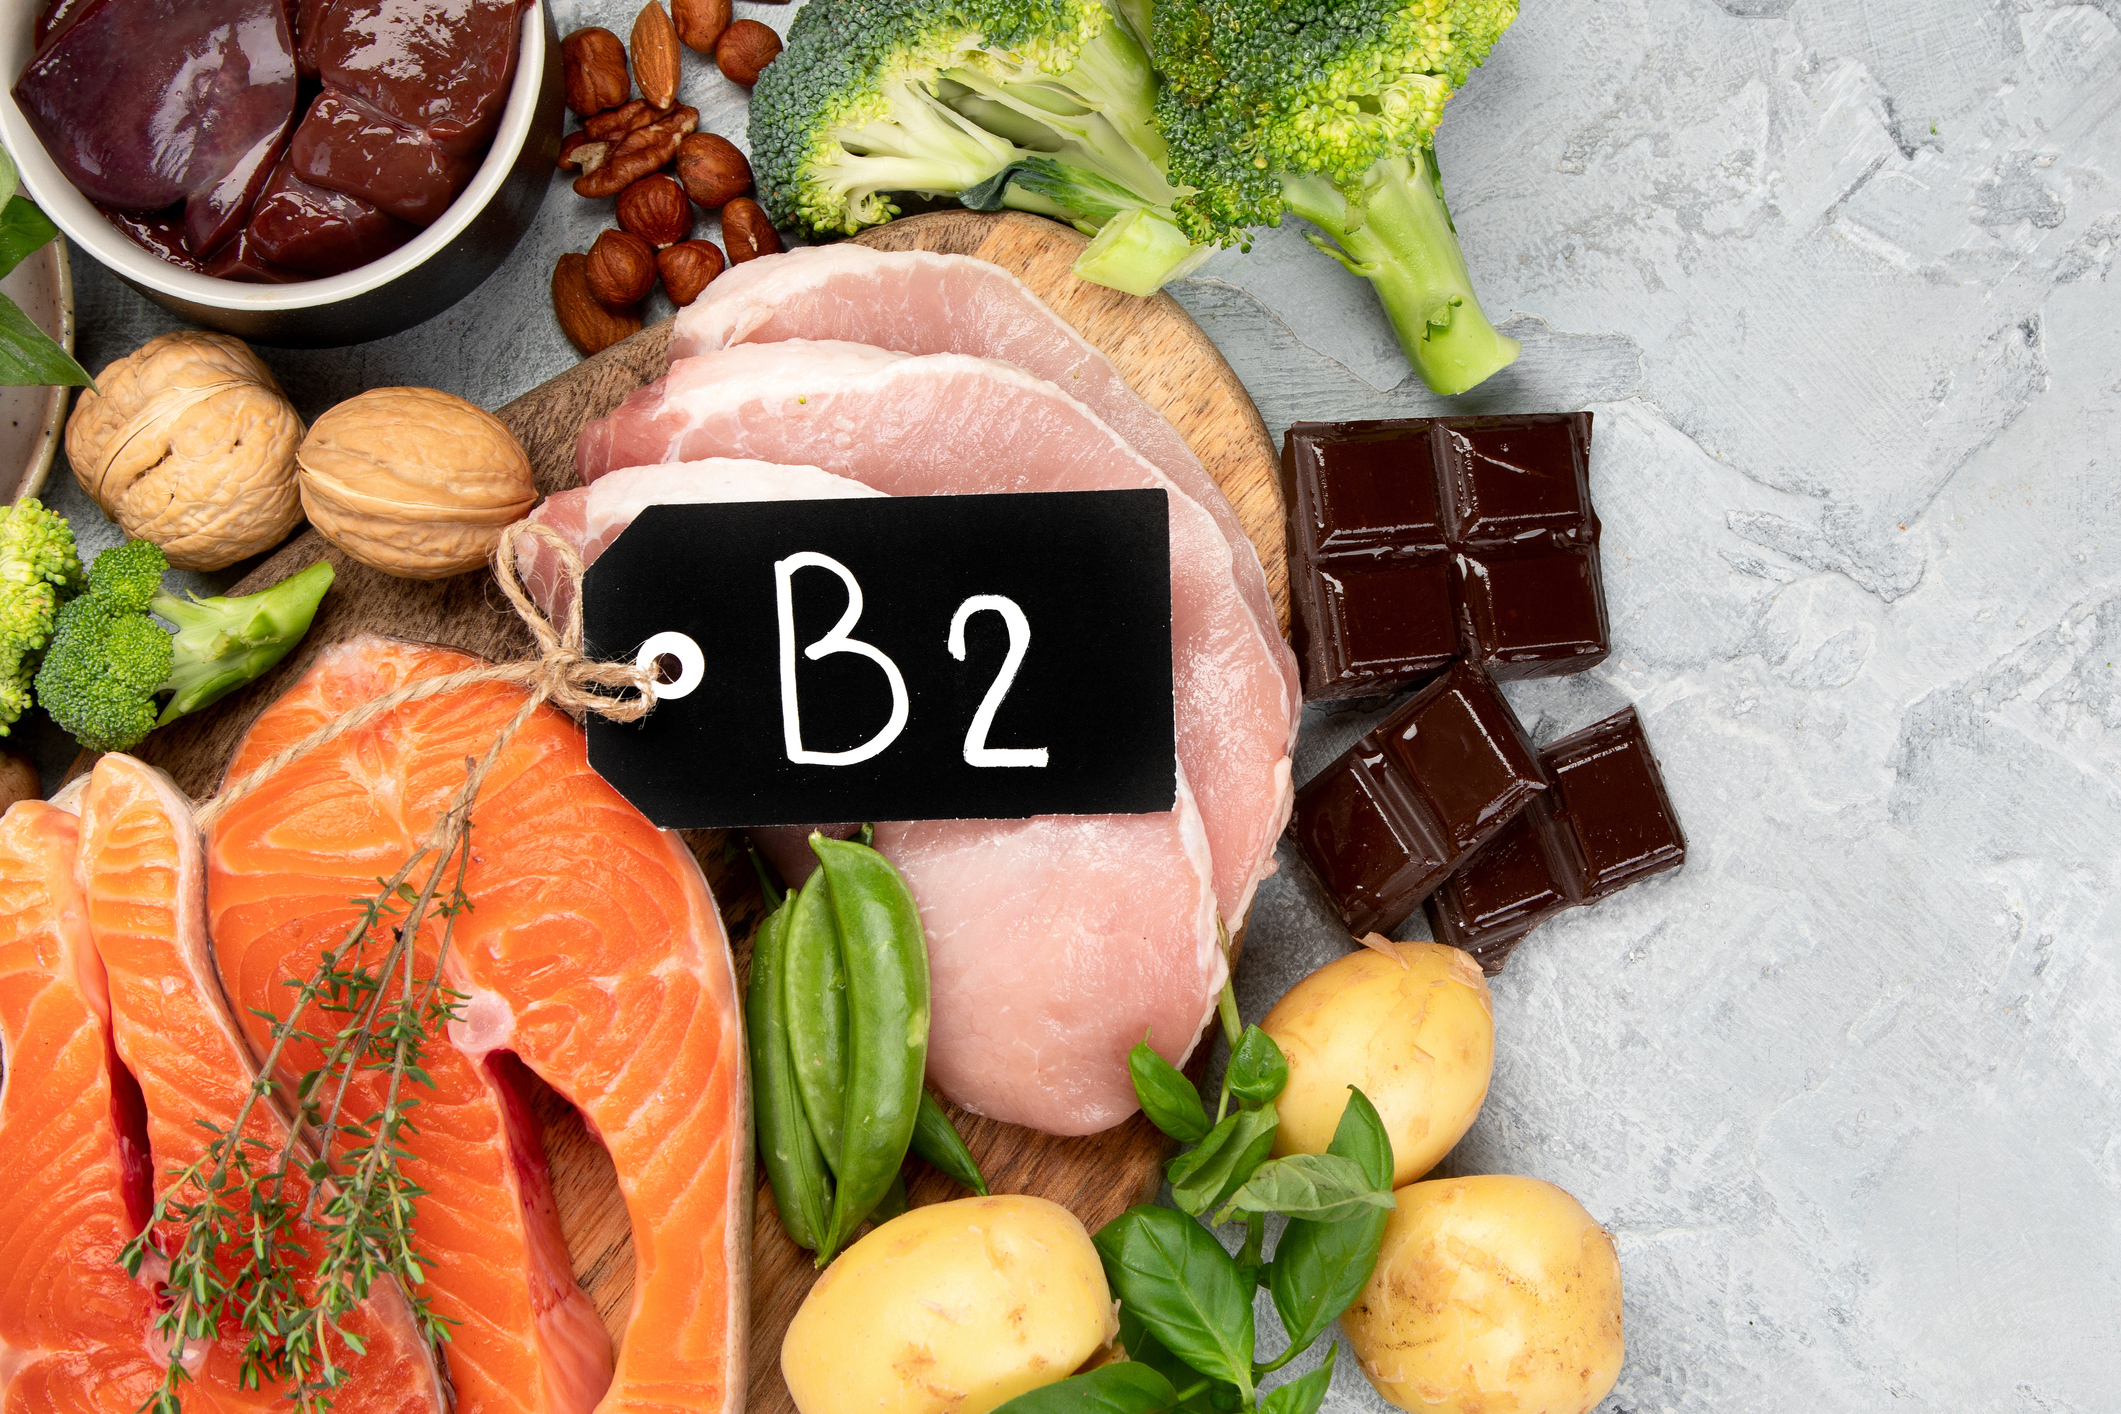 Potraviny s obsahom B2 - orechy, mäso, pečeň, čokoláda, brokolica, losos, hrach ako zdroje vitamínov a štítok s nápisom B2